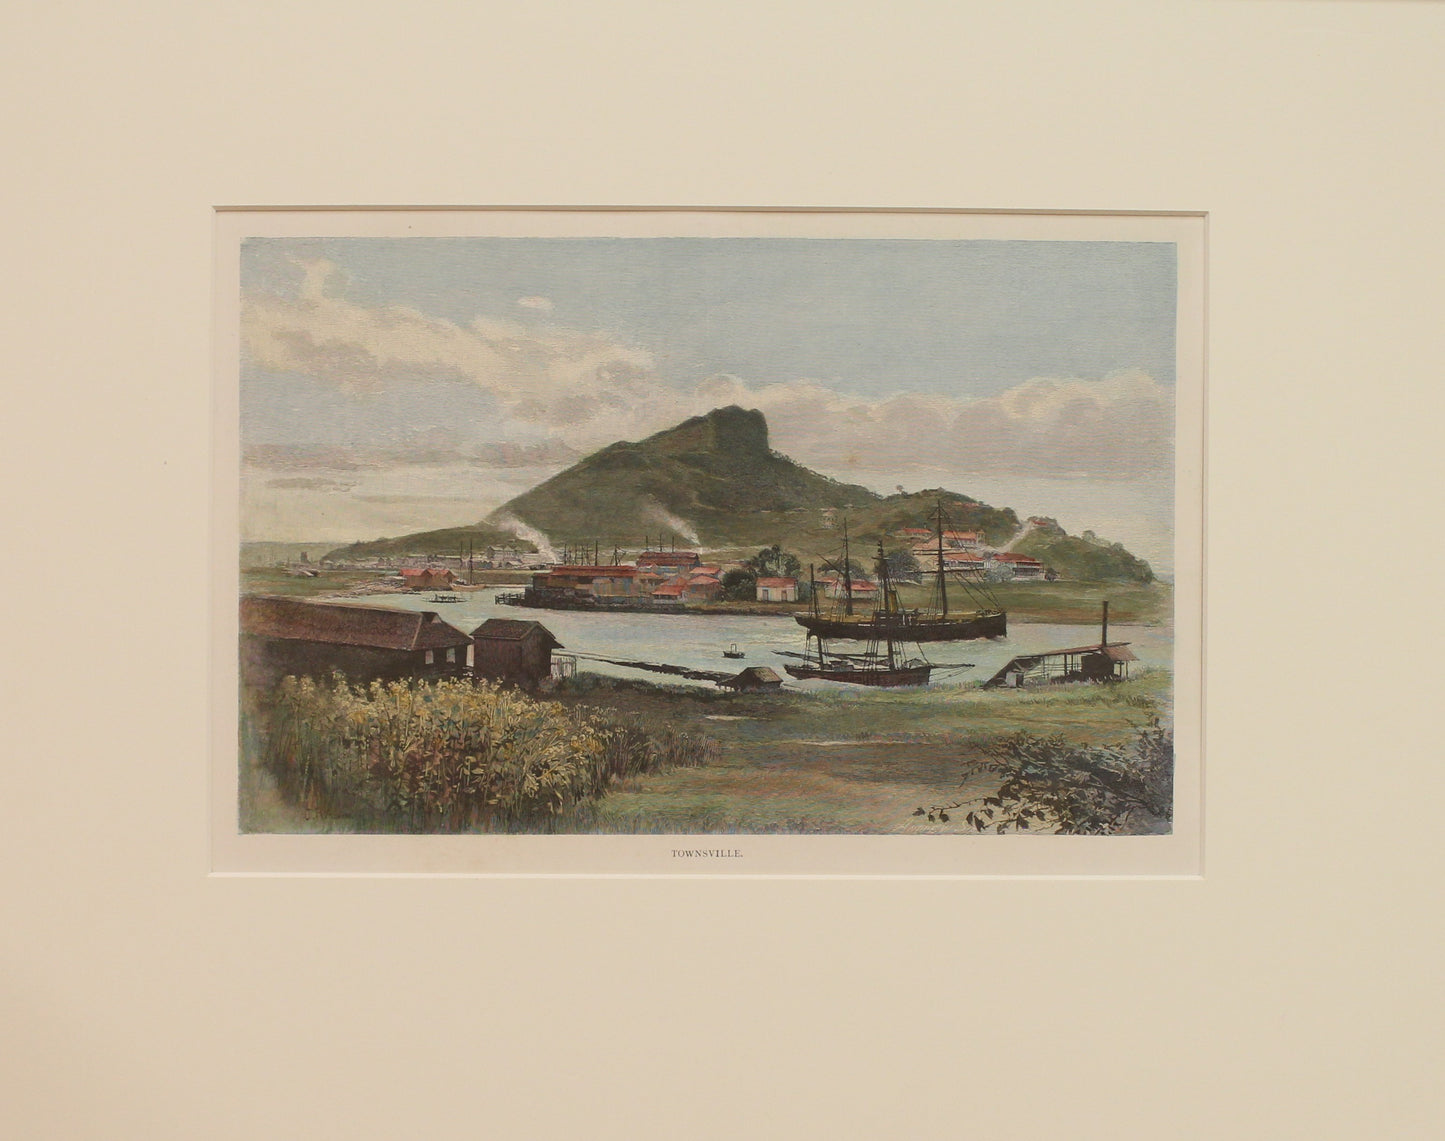 Australia, Townsville, North Queensland, c1886